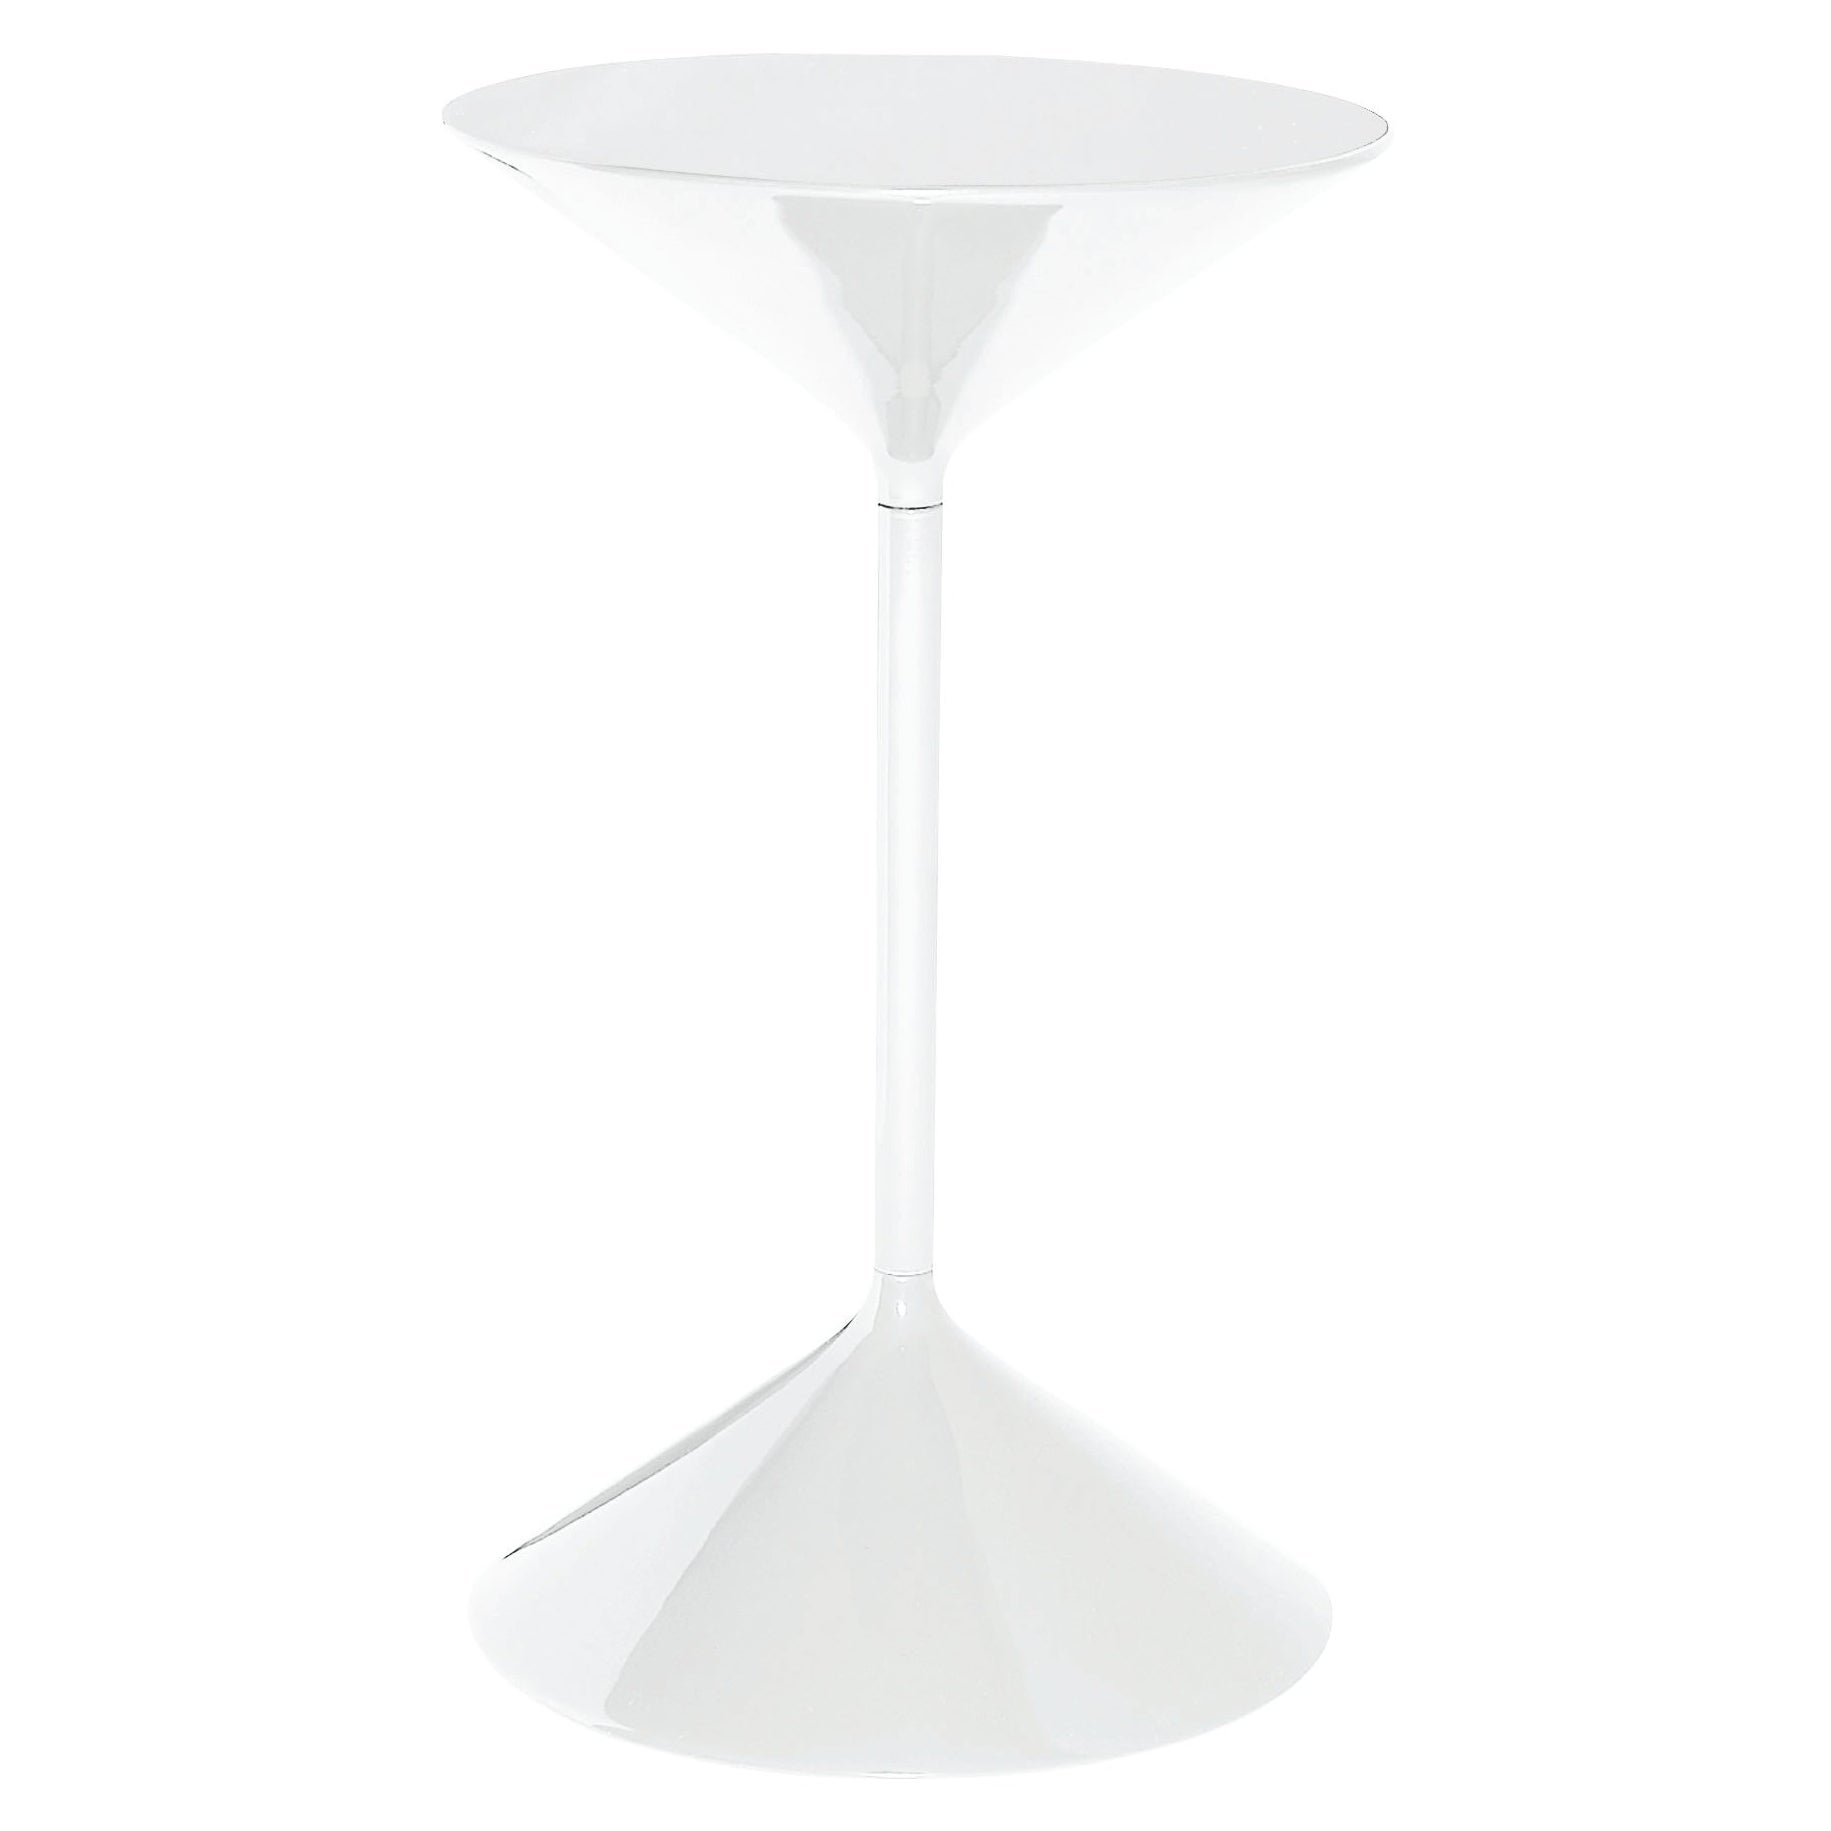 Zanotta Tempo Small Table in White Finish with Lacquered Top by Prospero Rasulo